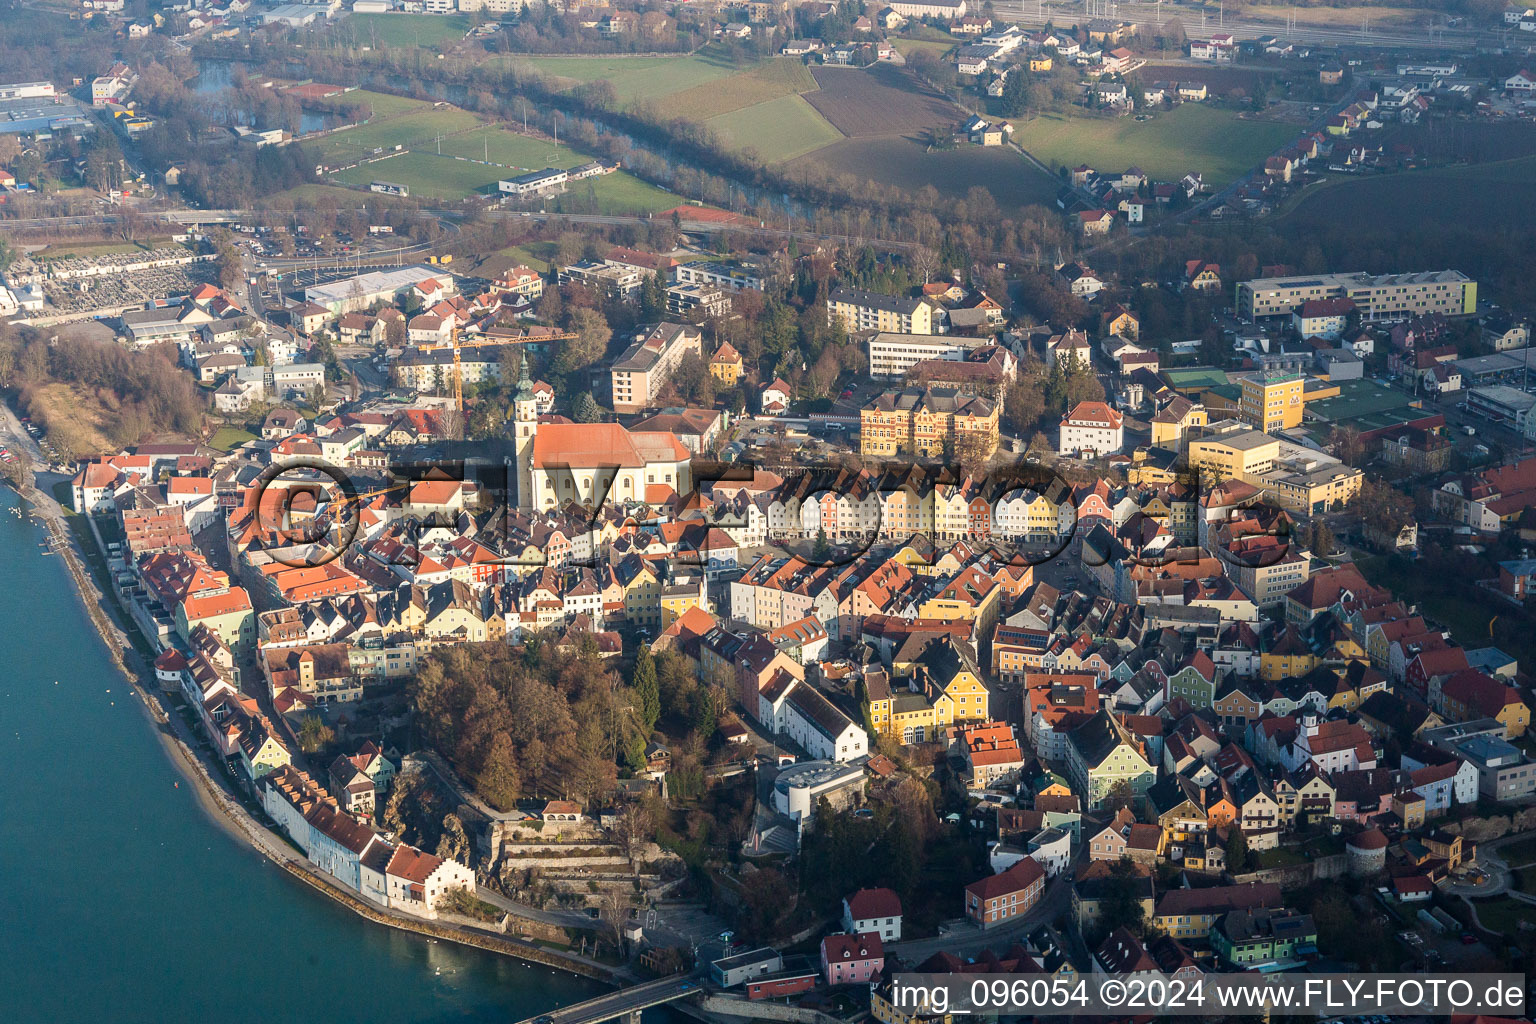 Luftbild von Ortskern am Uferbereich des Inn - Flußverlaufes in Schärding in Oberösterreich, Österreich